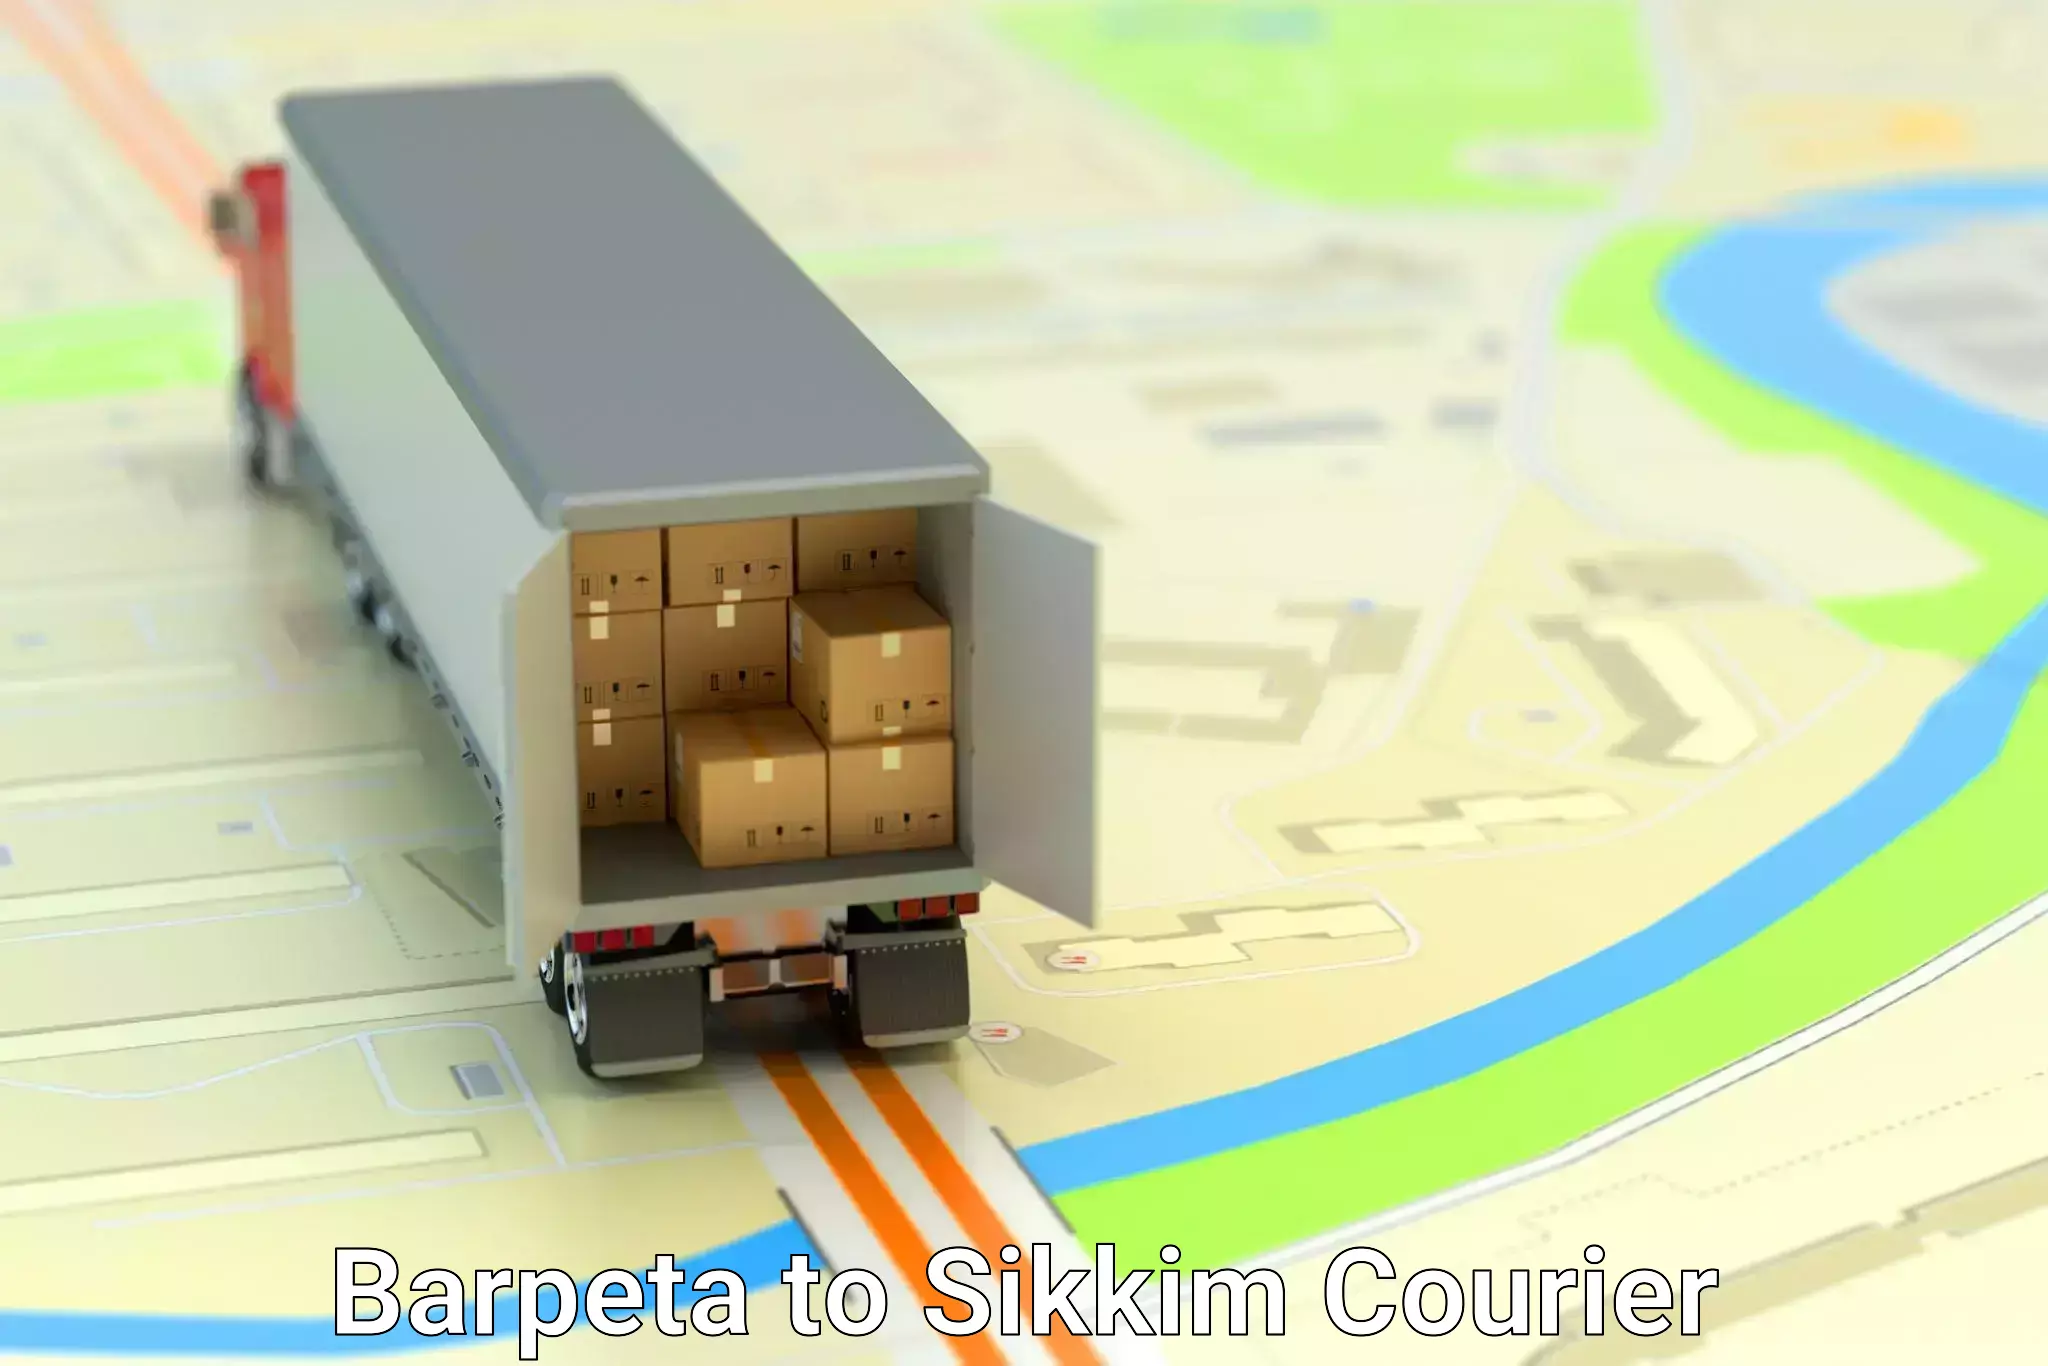 Affordable parcel service Barpeta to Singtam